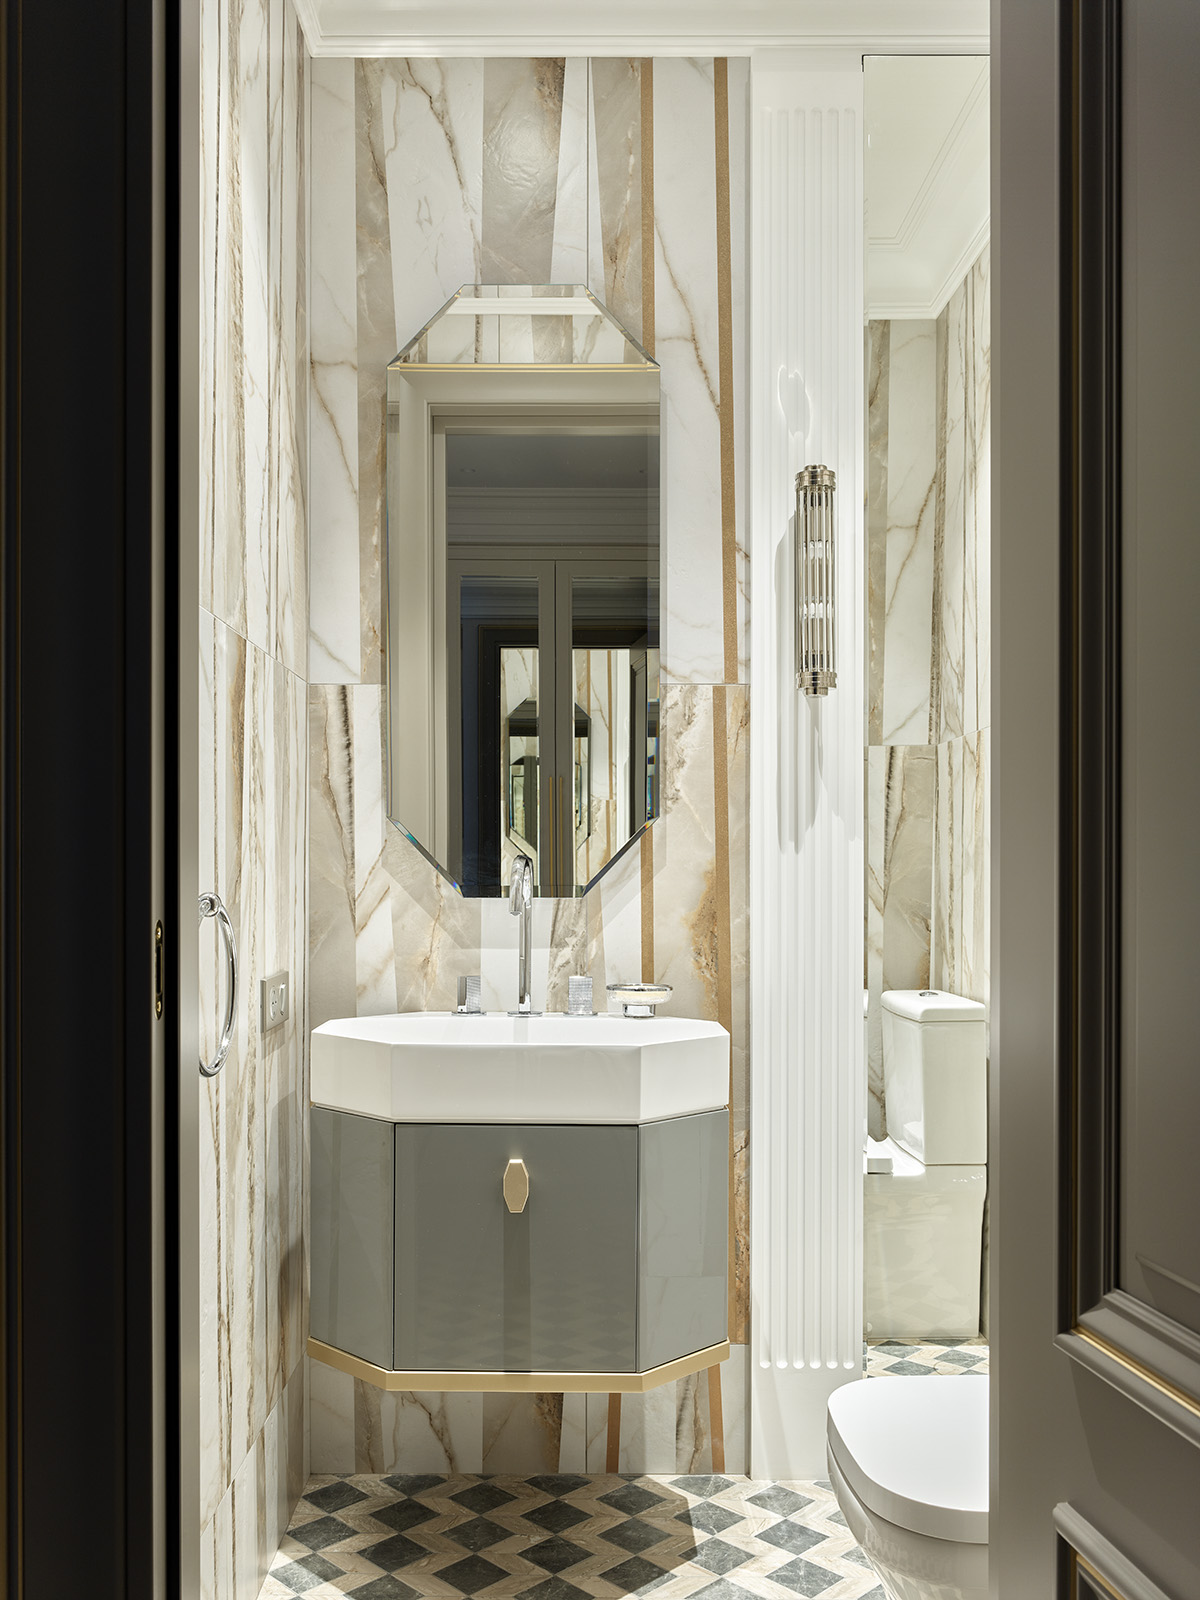 Khu vực rửa tay nằm trong góc phòng tắm được các NTK nội thất ưu ái lựa chọn gạch ốp tường là đá cẩm thạch đắt giá, thêm vào tấm gương hình bát giác tựa như một 'viên ngọc sáng' trên tường.